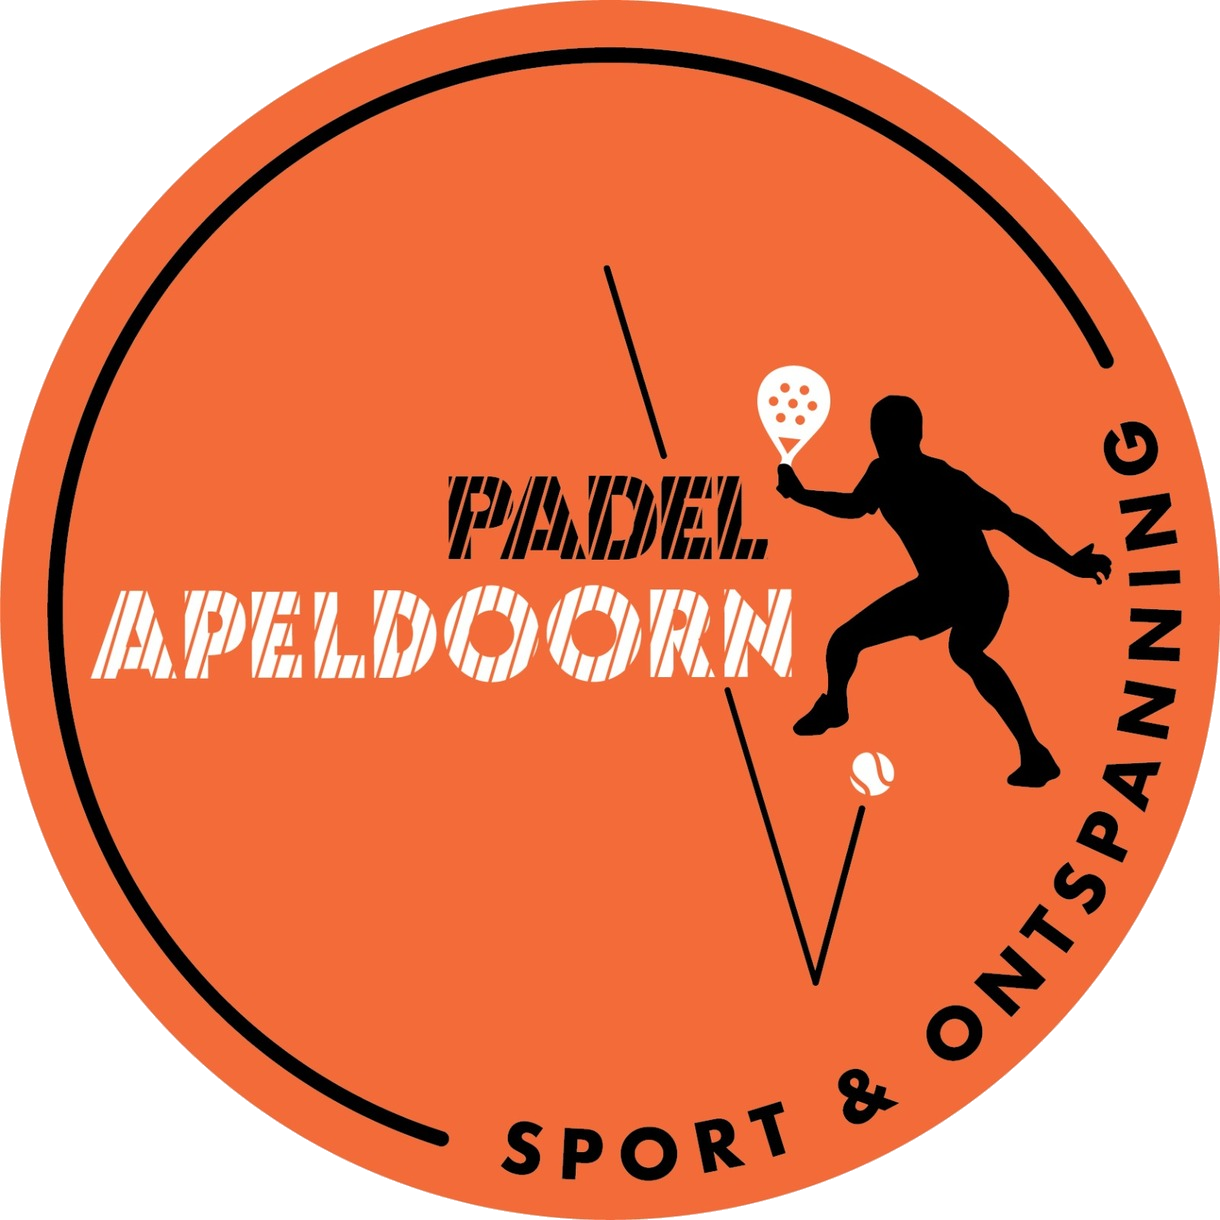 Padel Apeldoorn logo new